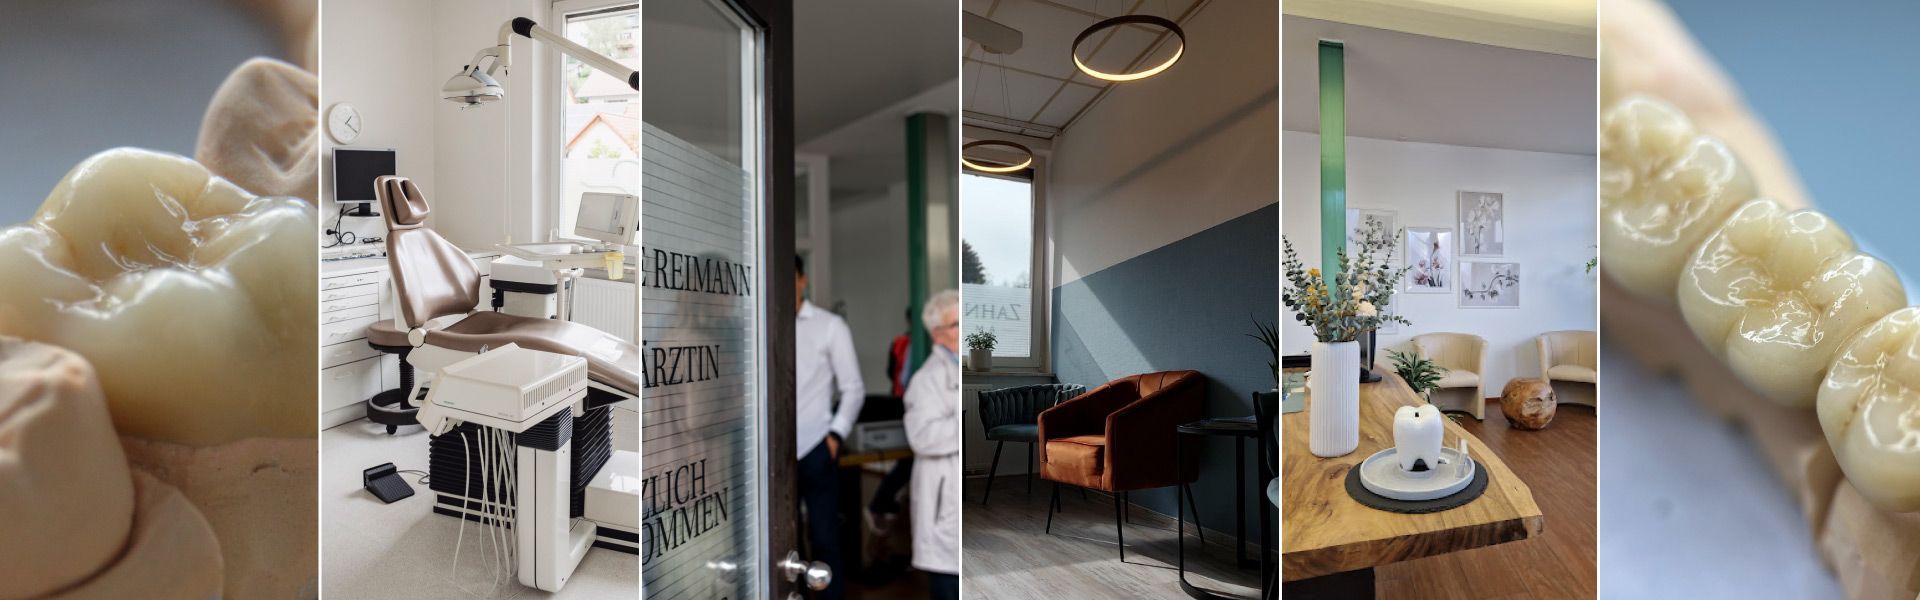 Eine Collage aus Fotos einer Zahnarztpraxis | Zahnmedizin am Neckar